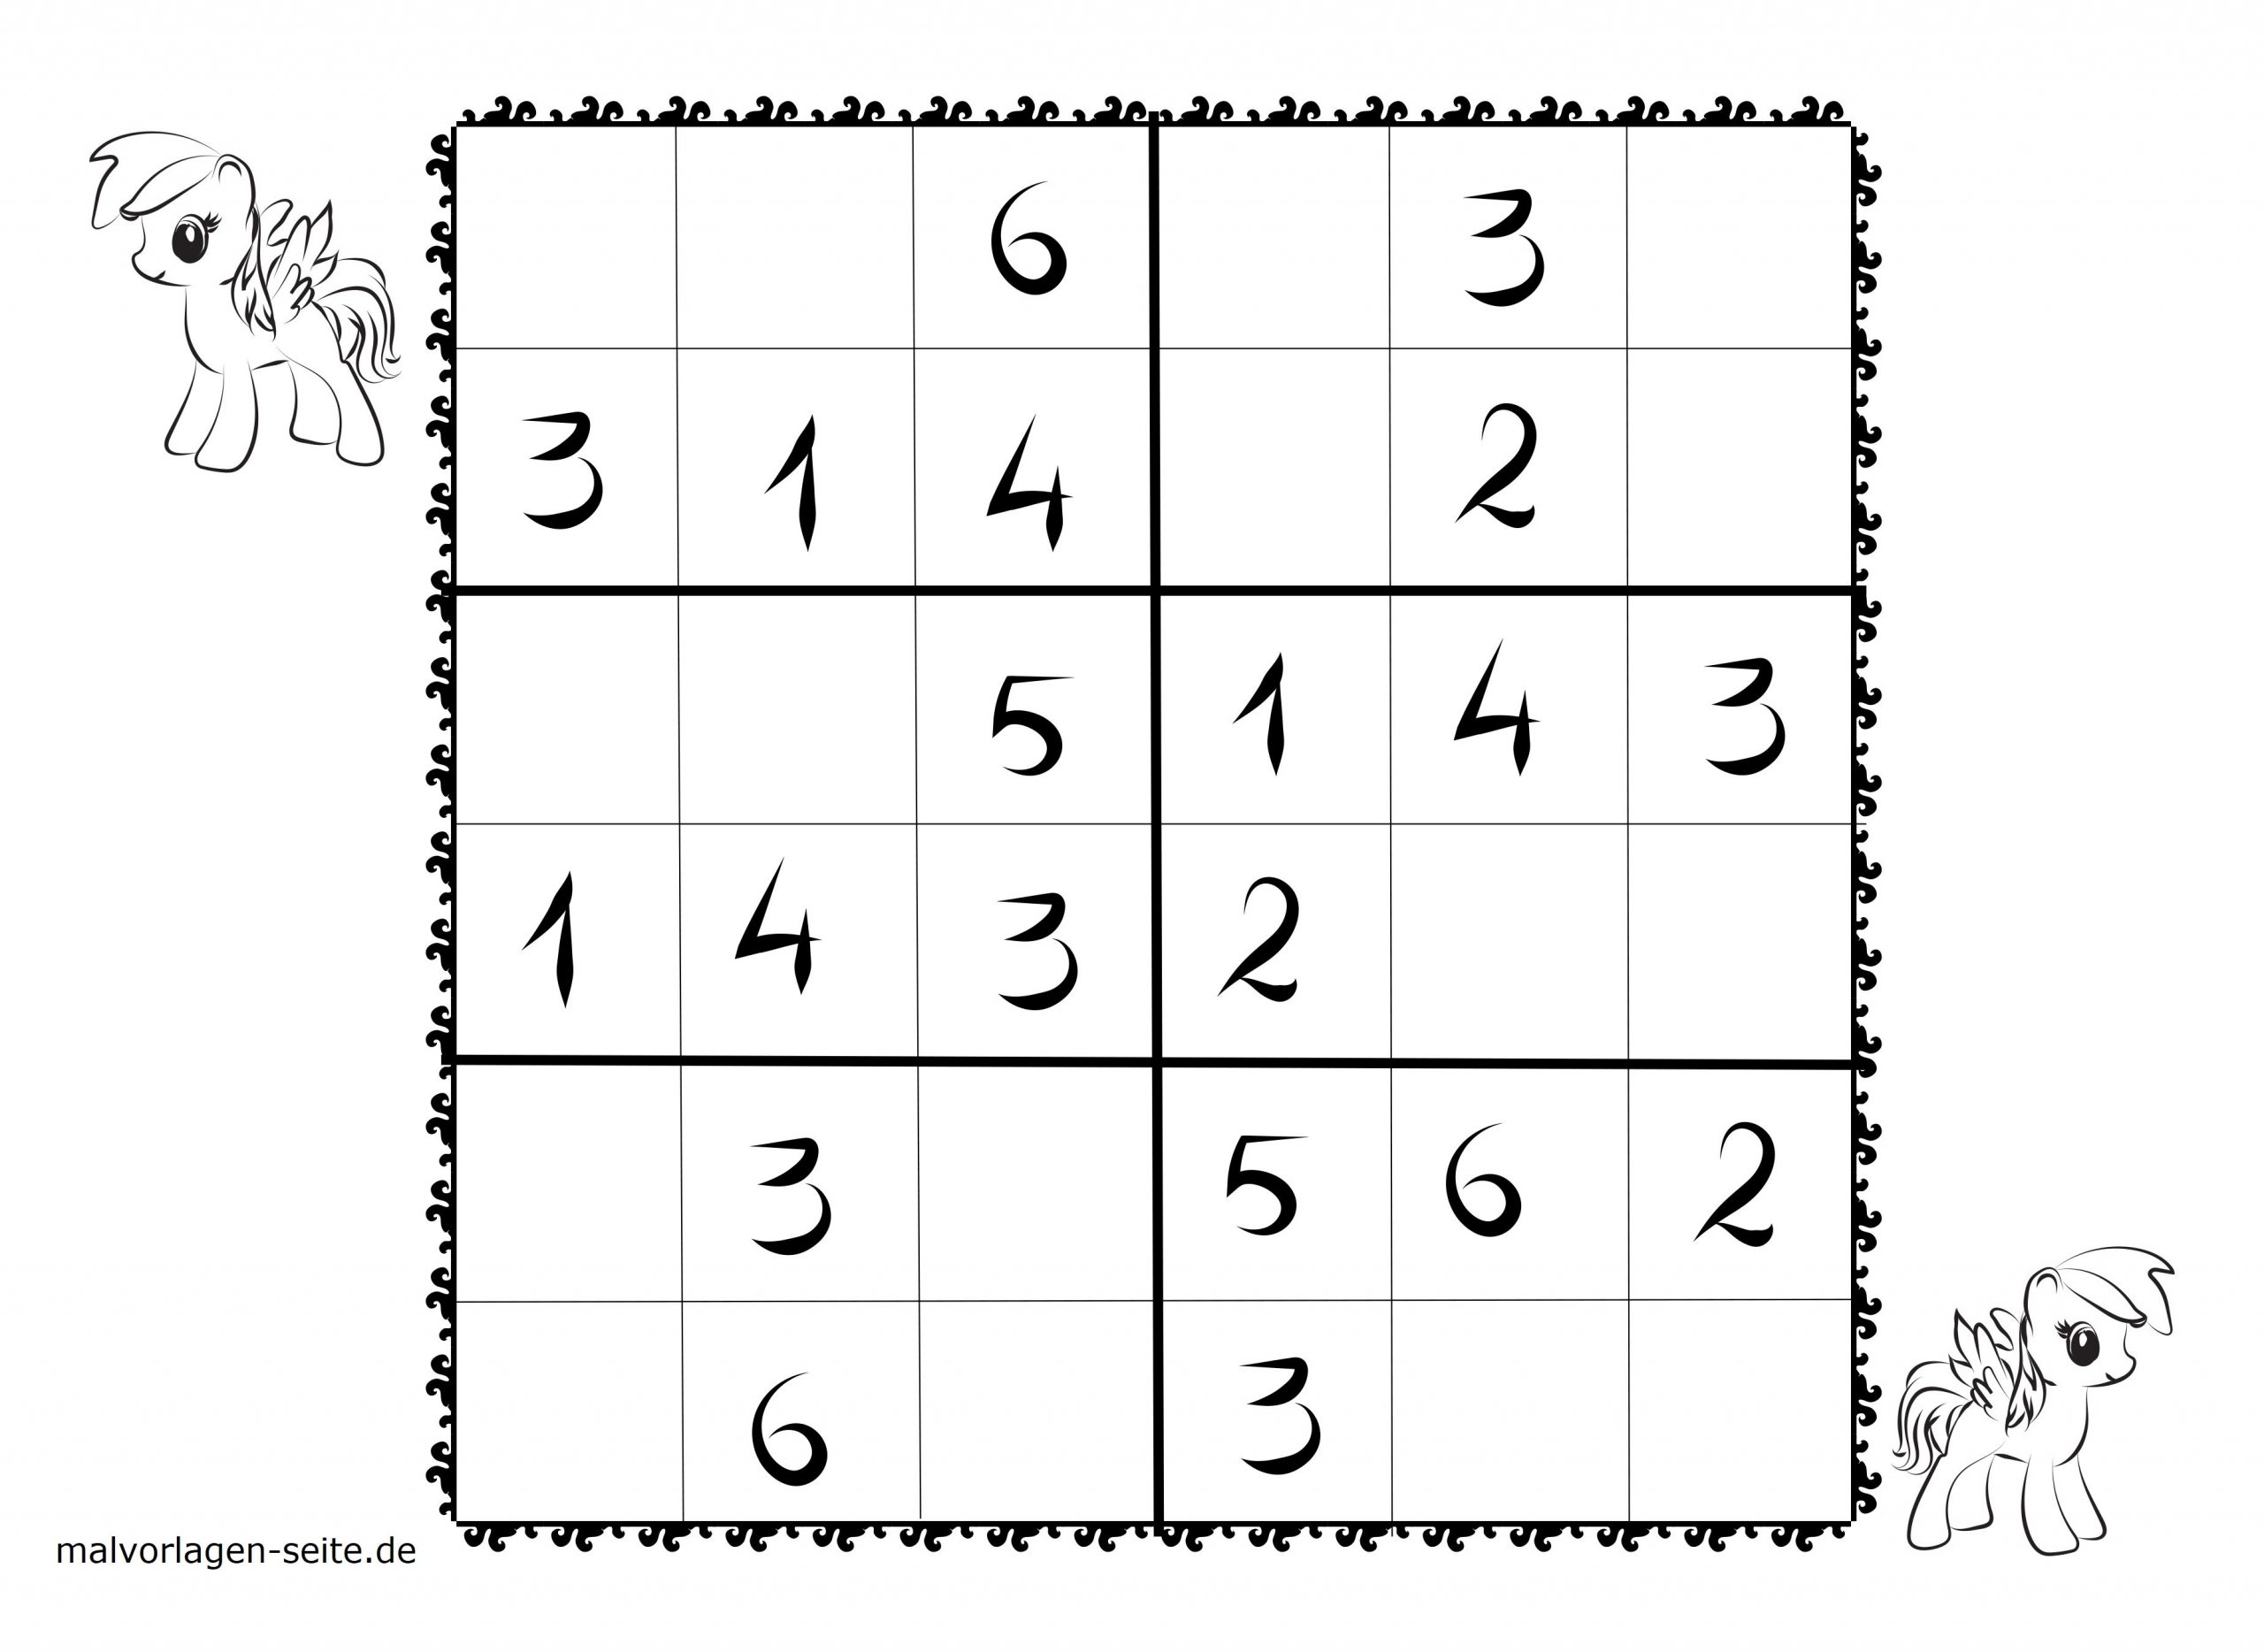 Malvorlagen Sudoku Kinder | Coloring And Malvorlagan für Sudoku Einfach Zum Ausdrucken